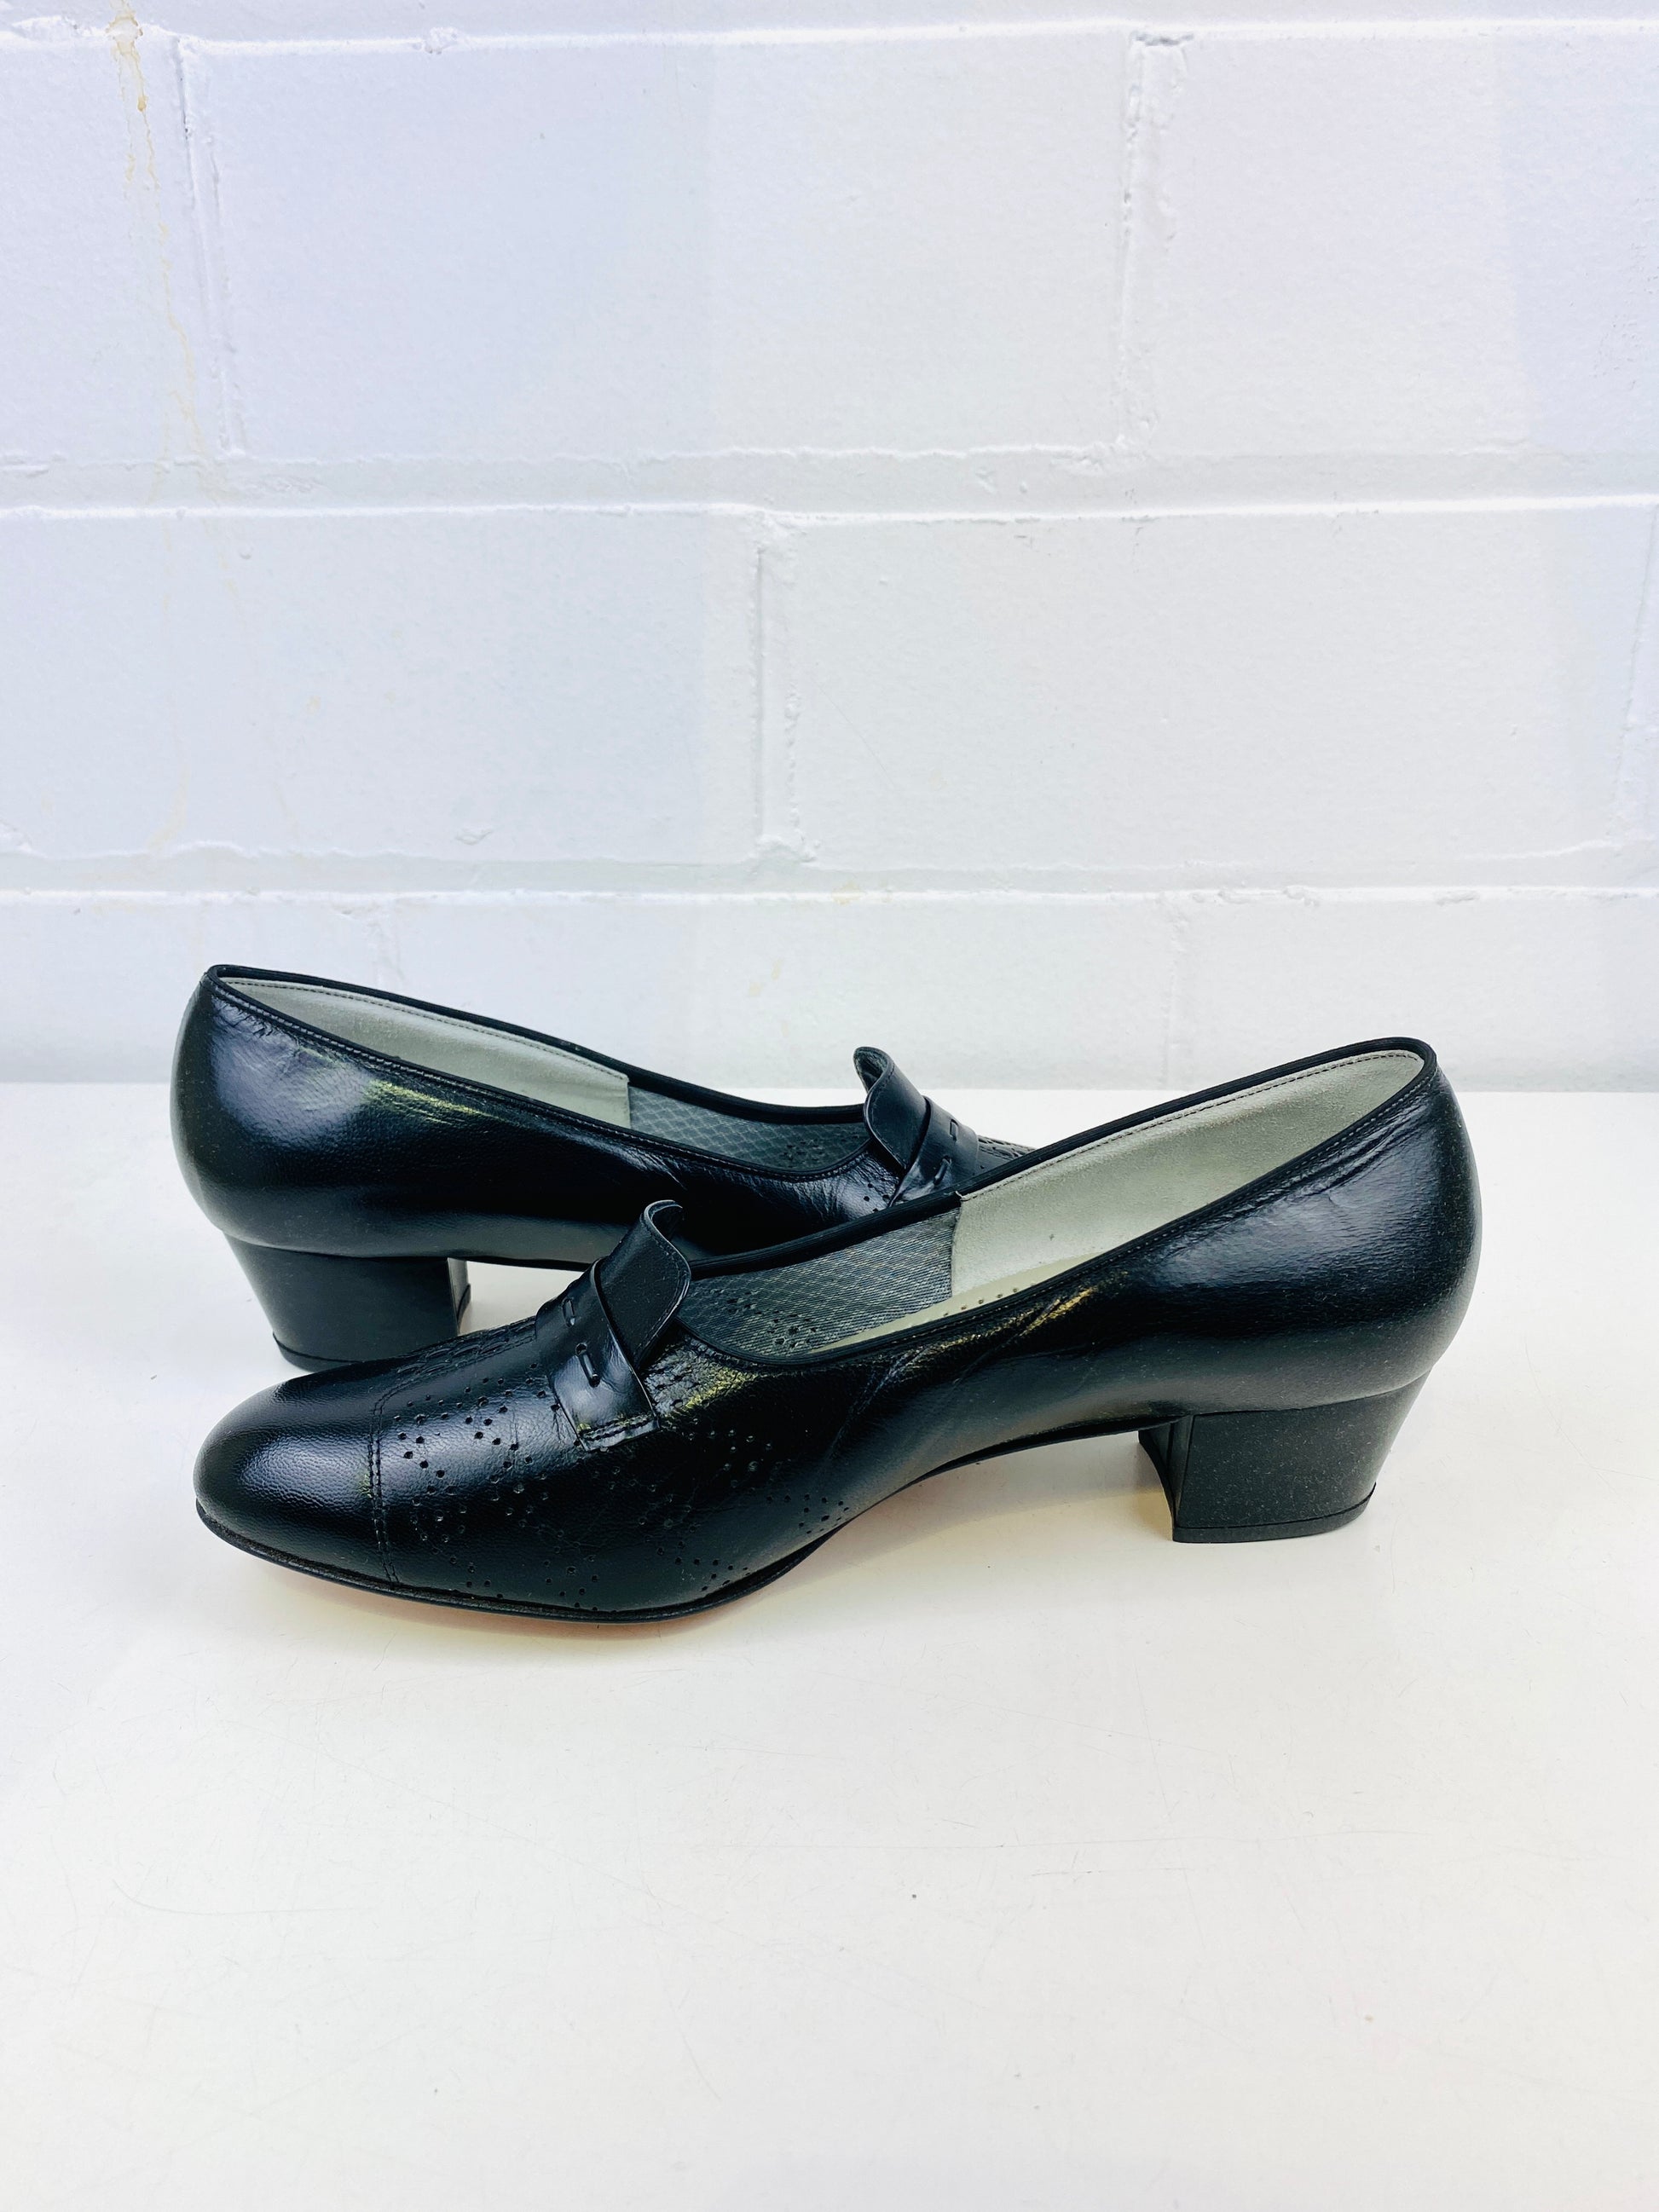 Vintage Deadstock Shoes, Women's 1980s Black Leather Cuban Heel Pumps, NOS, 8195